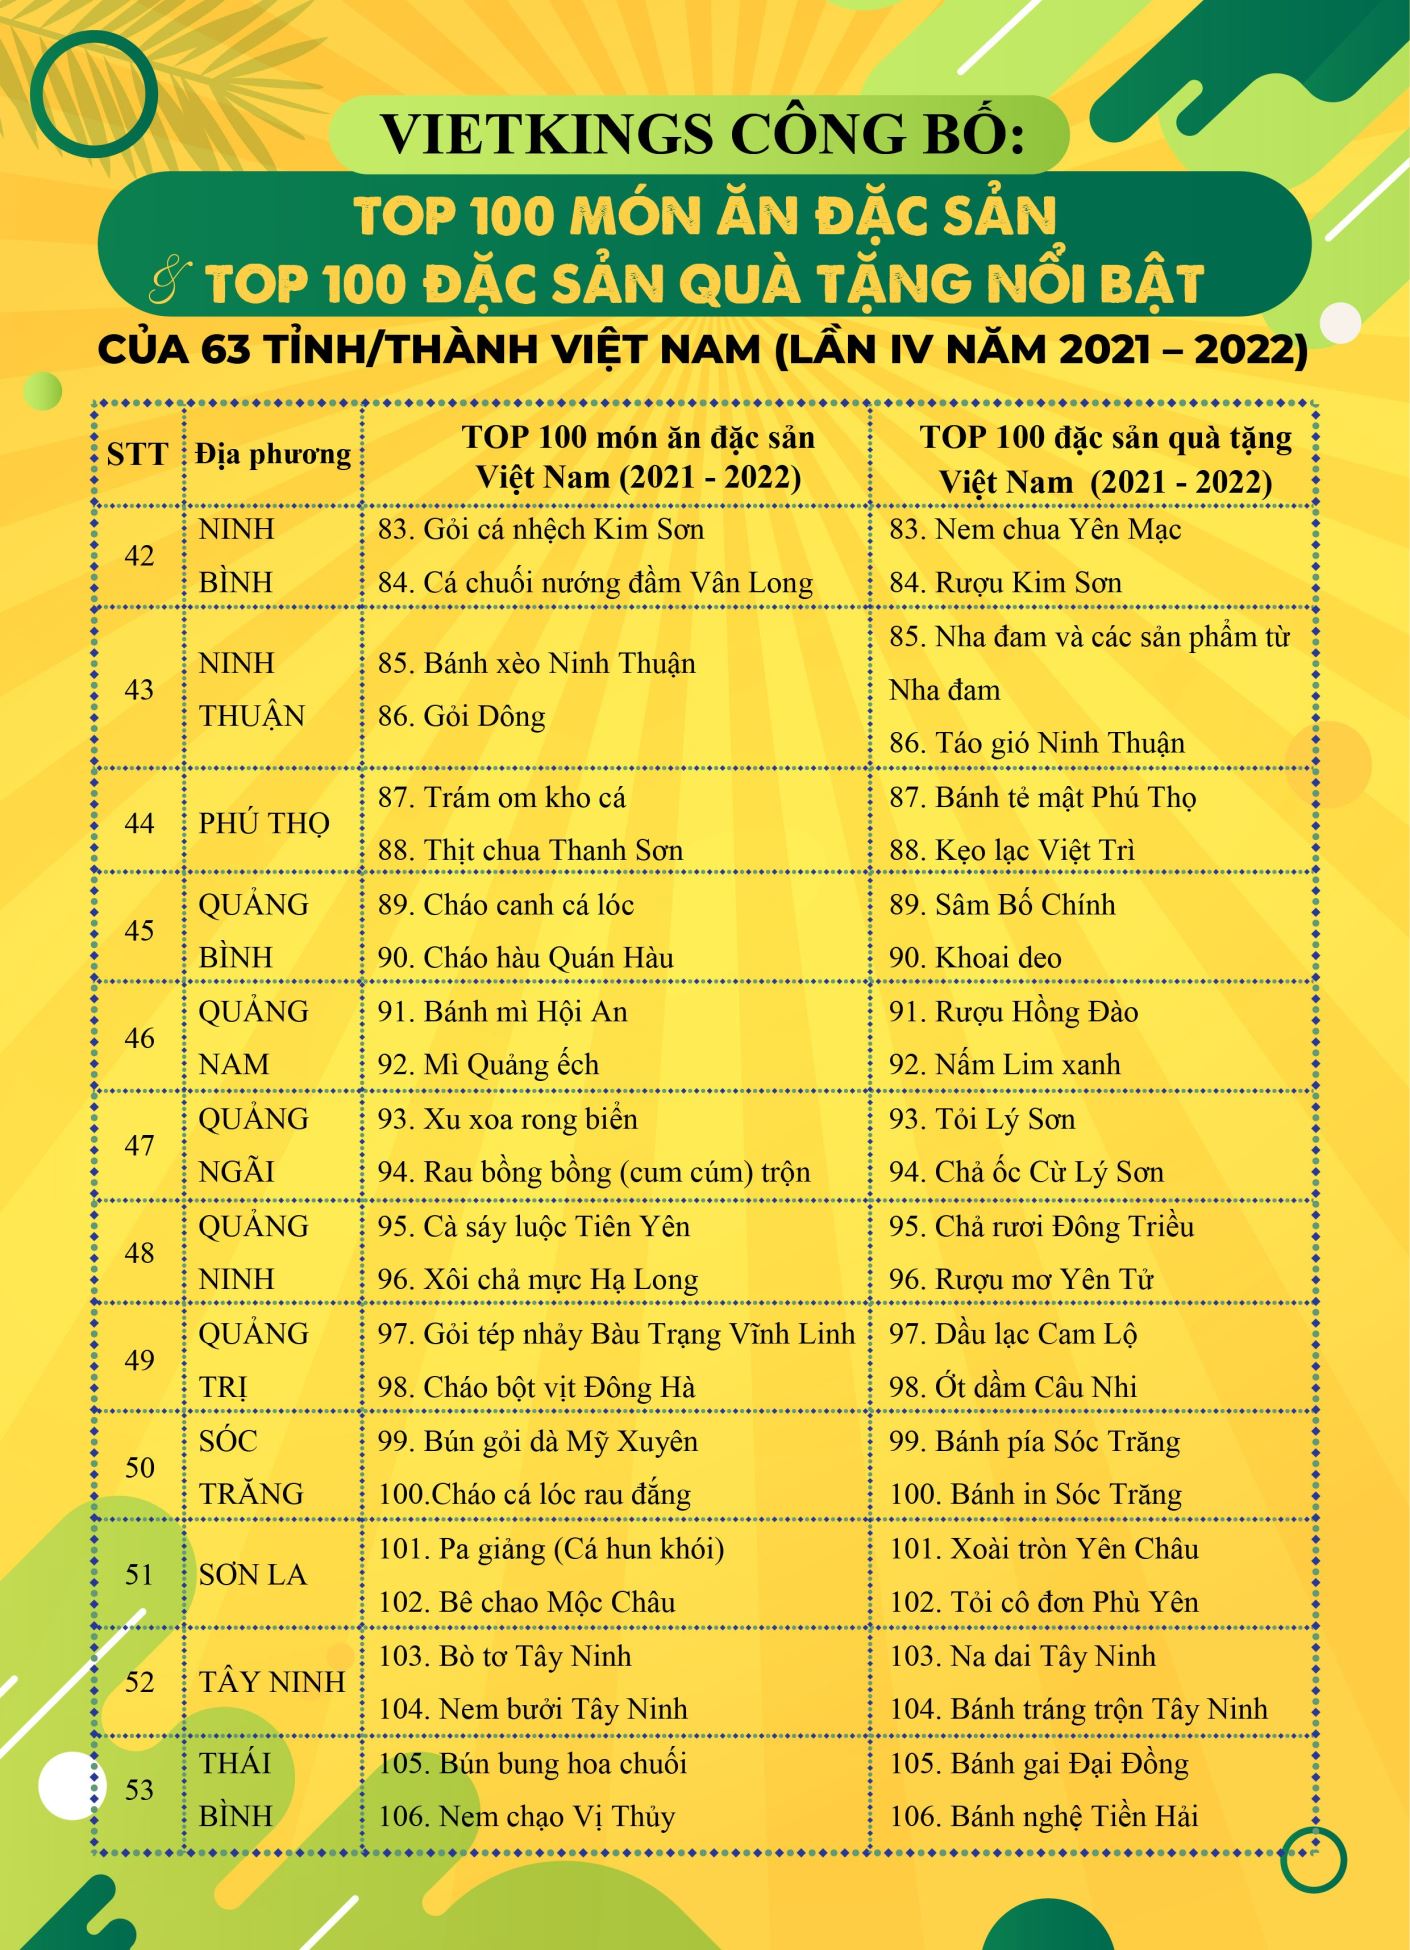 Bánh mì Sài Gòn, gỏi sầu đâu, lẩu mắm U Minh vào top 100 món ăn Việt đặc sản - Ảnh 7.